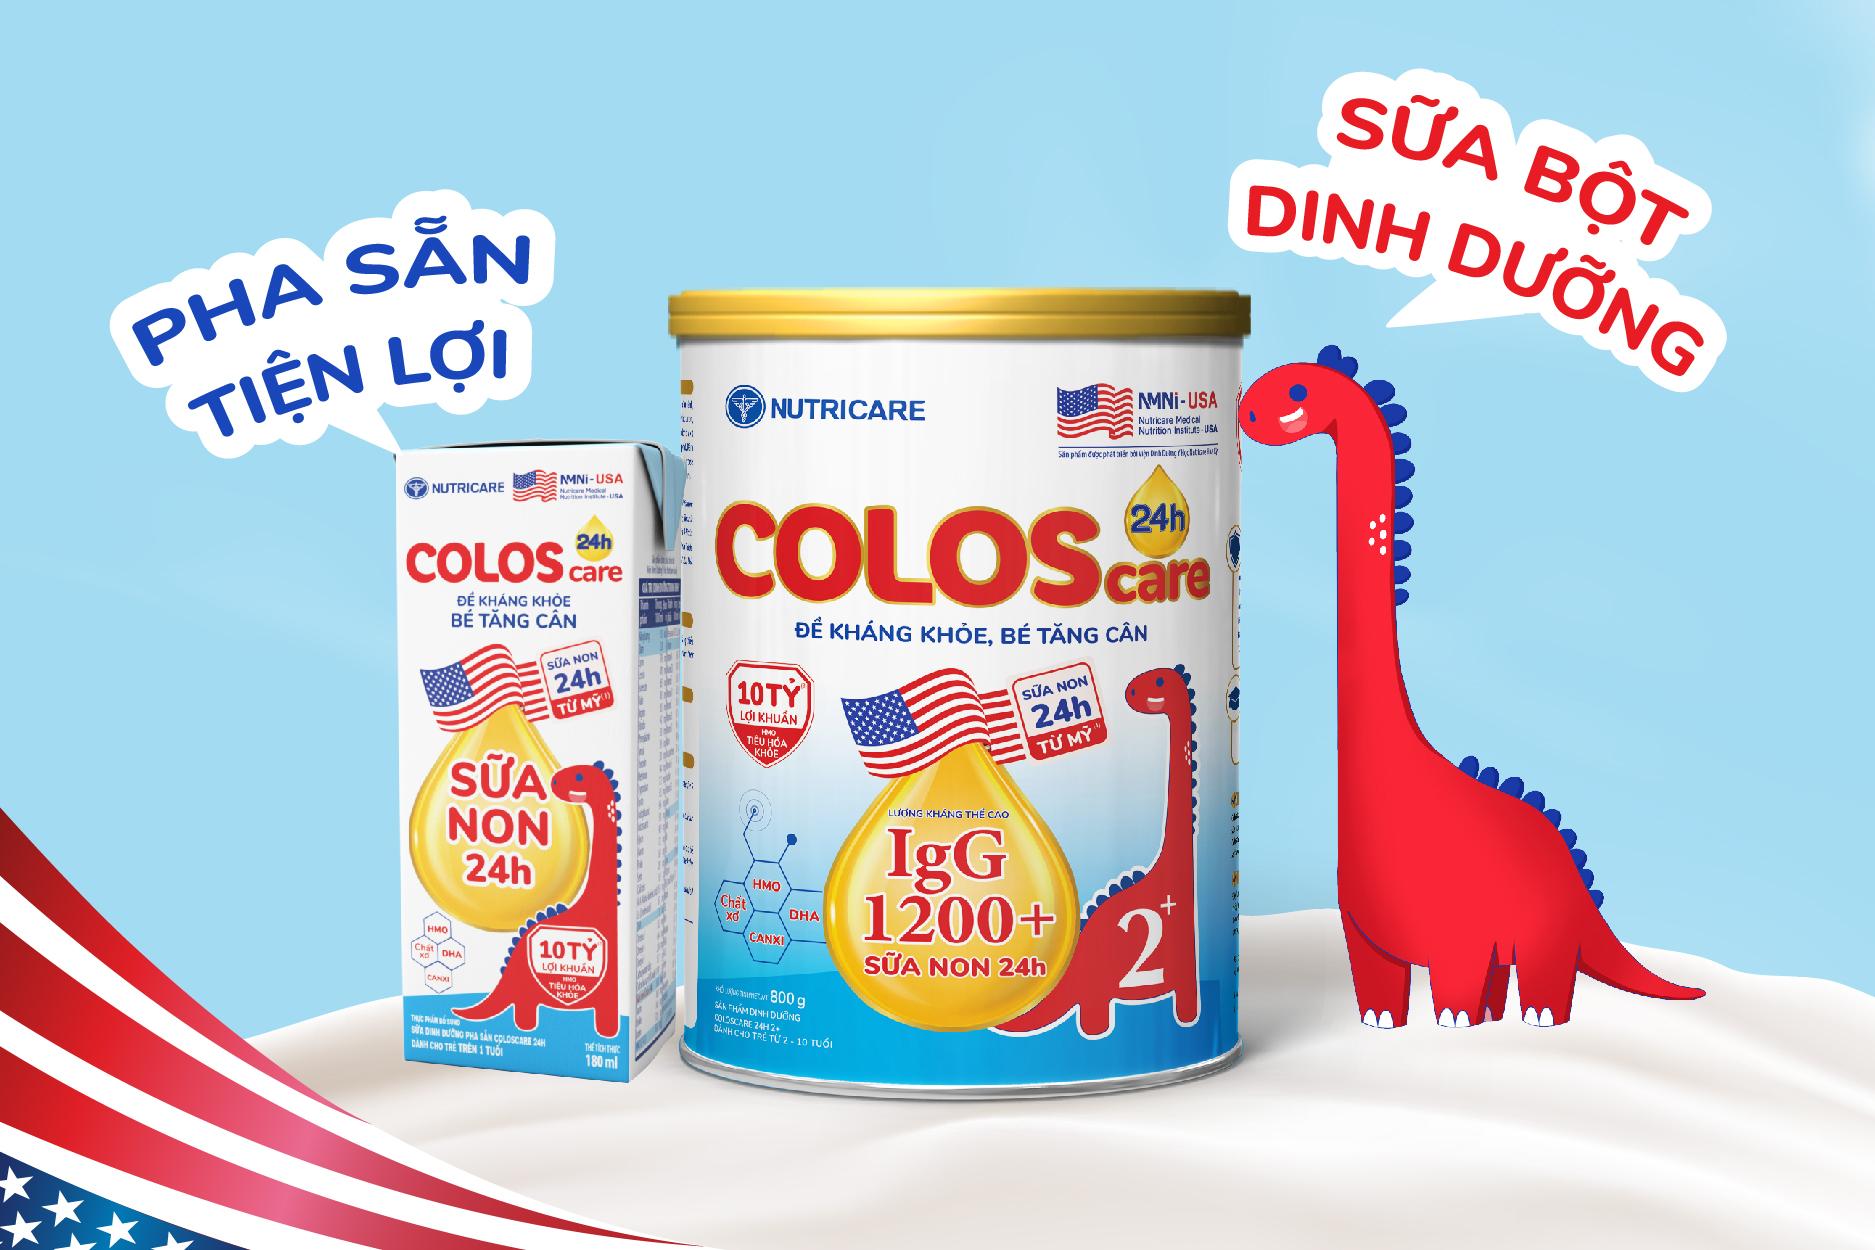 ColosCare 24h với sữa bột dinh dưỡng và sữa pha sẵn tiện lợi